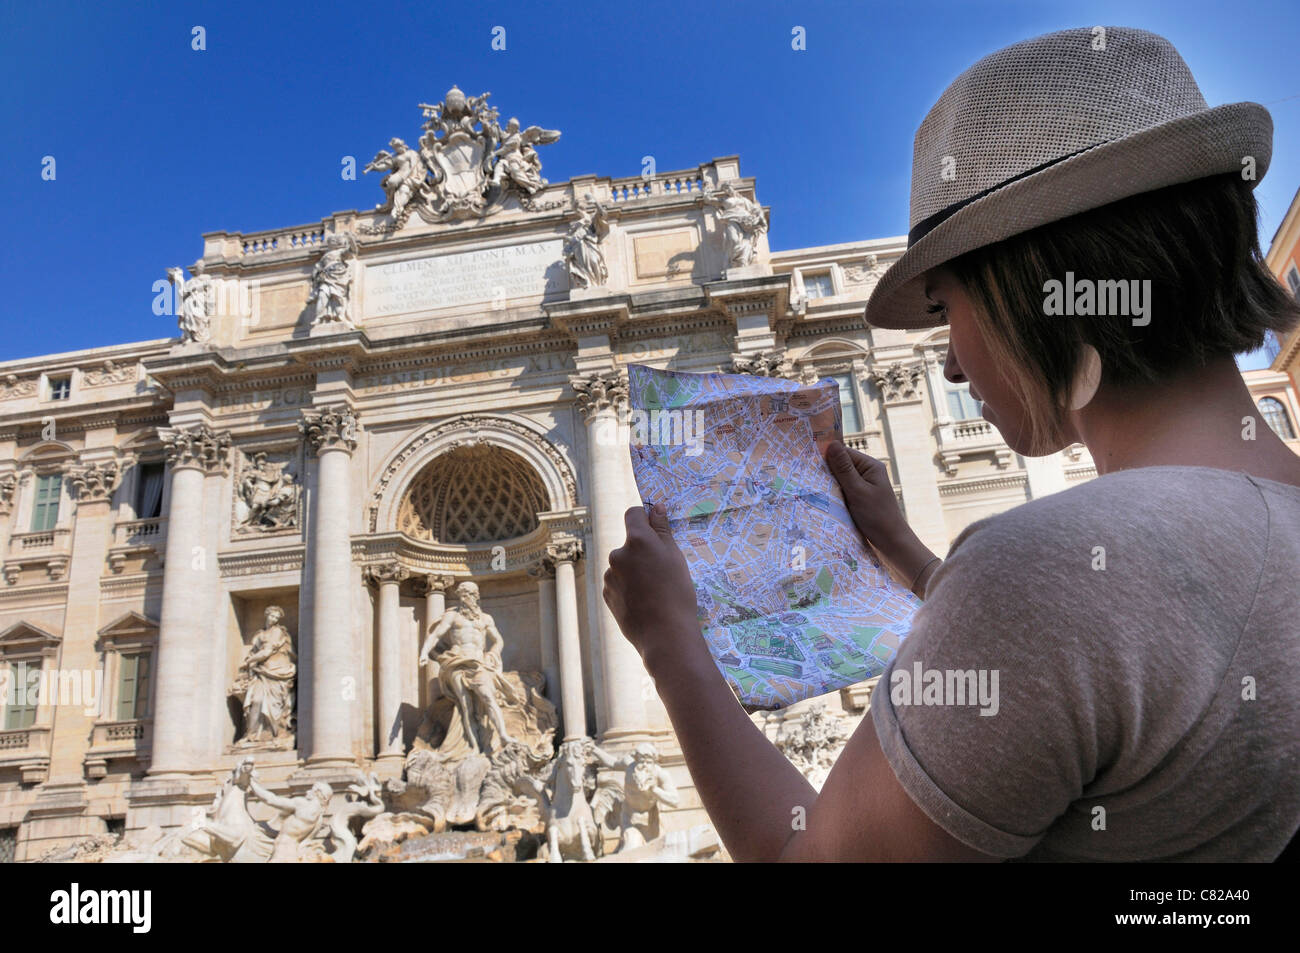 Les touristes à la recherche d'une carte à la Fontaine de Trevi à Rome, Italie Banque D'Images